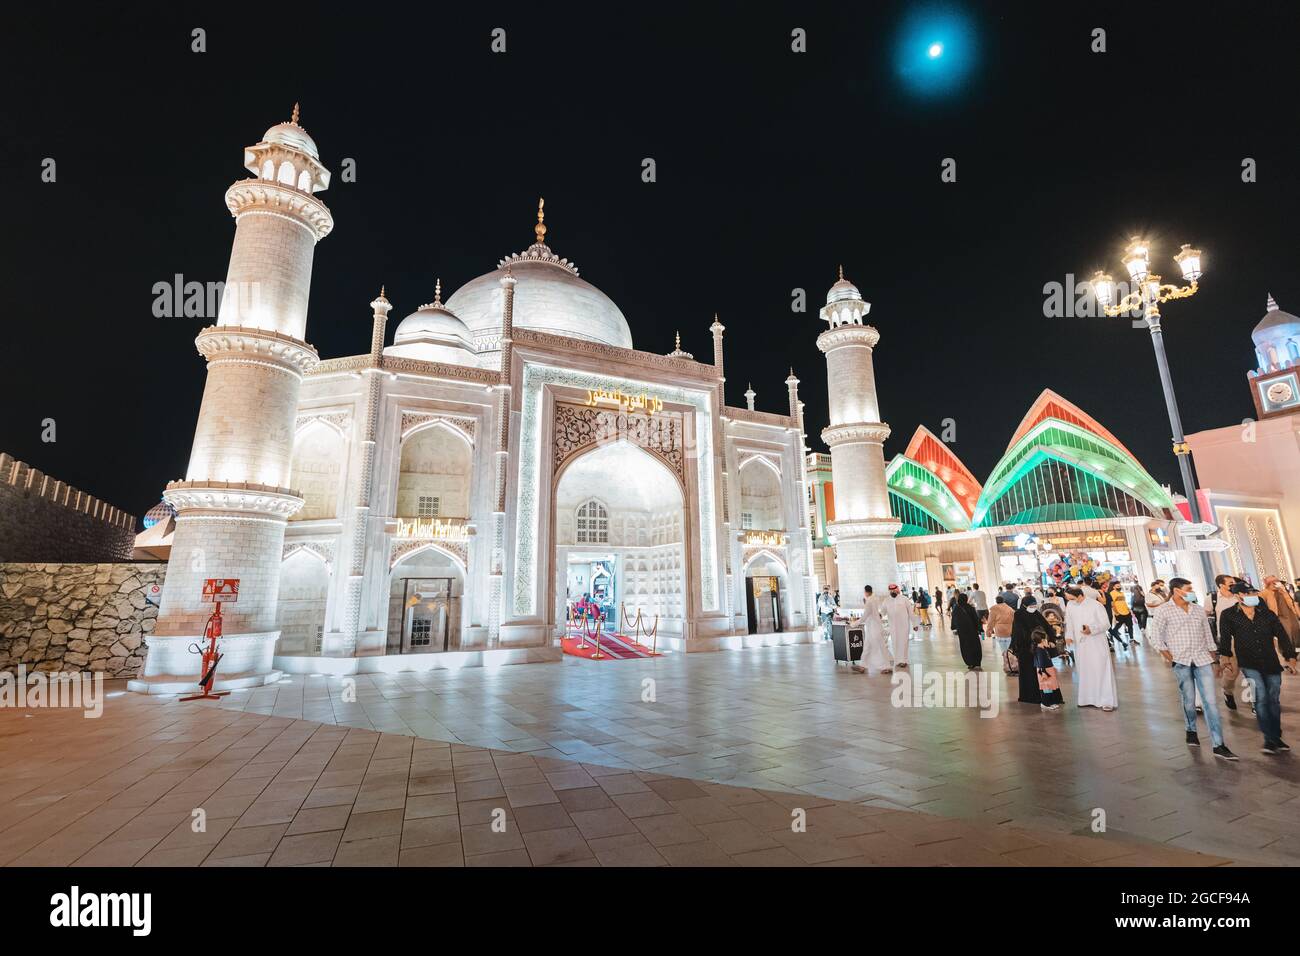 26 février 2021, Émirats Arabes Unis, Dubaï : mosquée illuminée près de l'entrée principale du Village mondial avec une foule de touristes et de visiteurs Banque D'Images